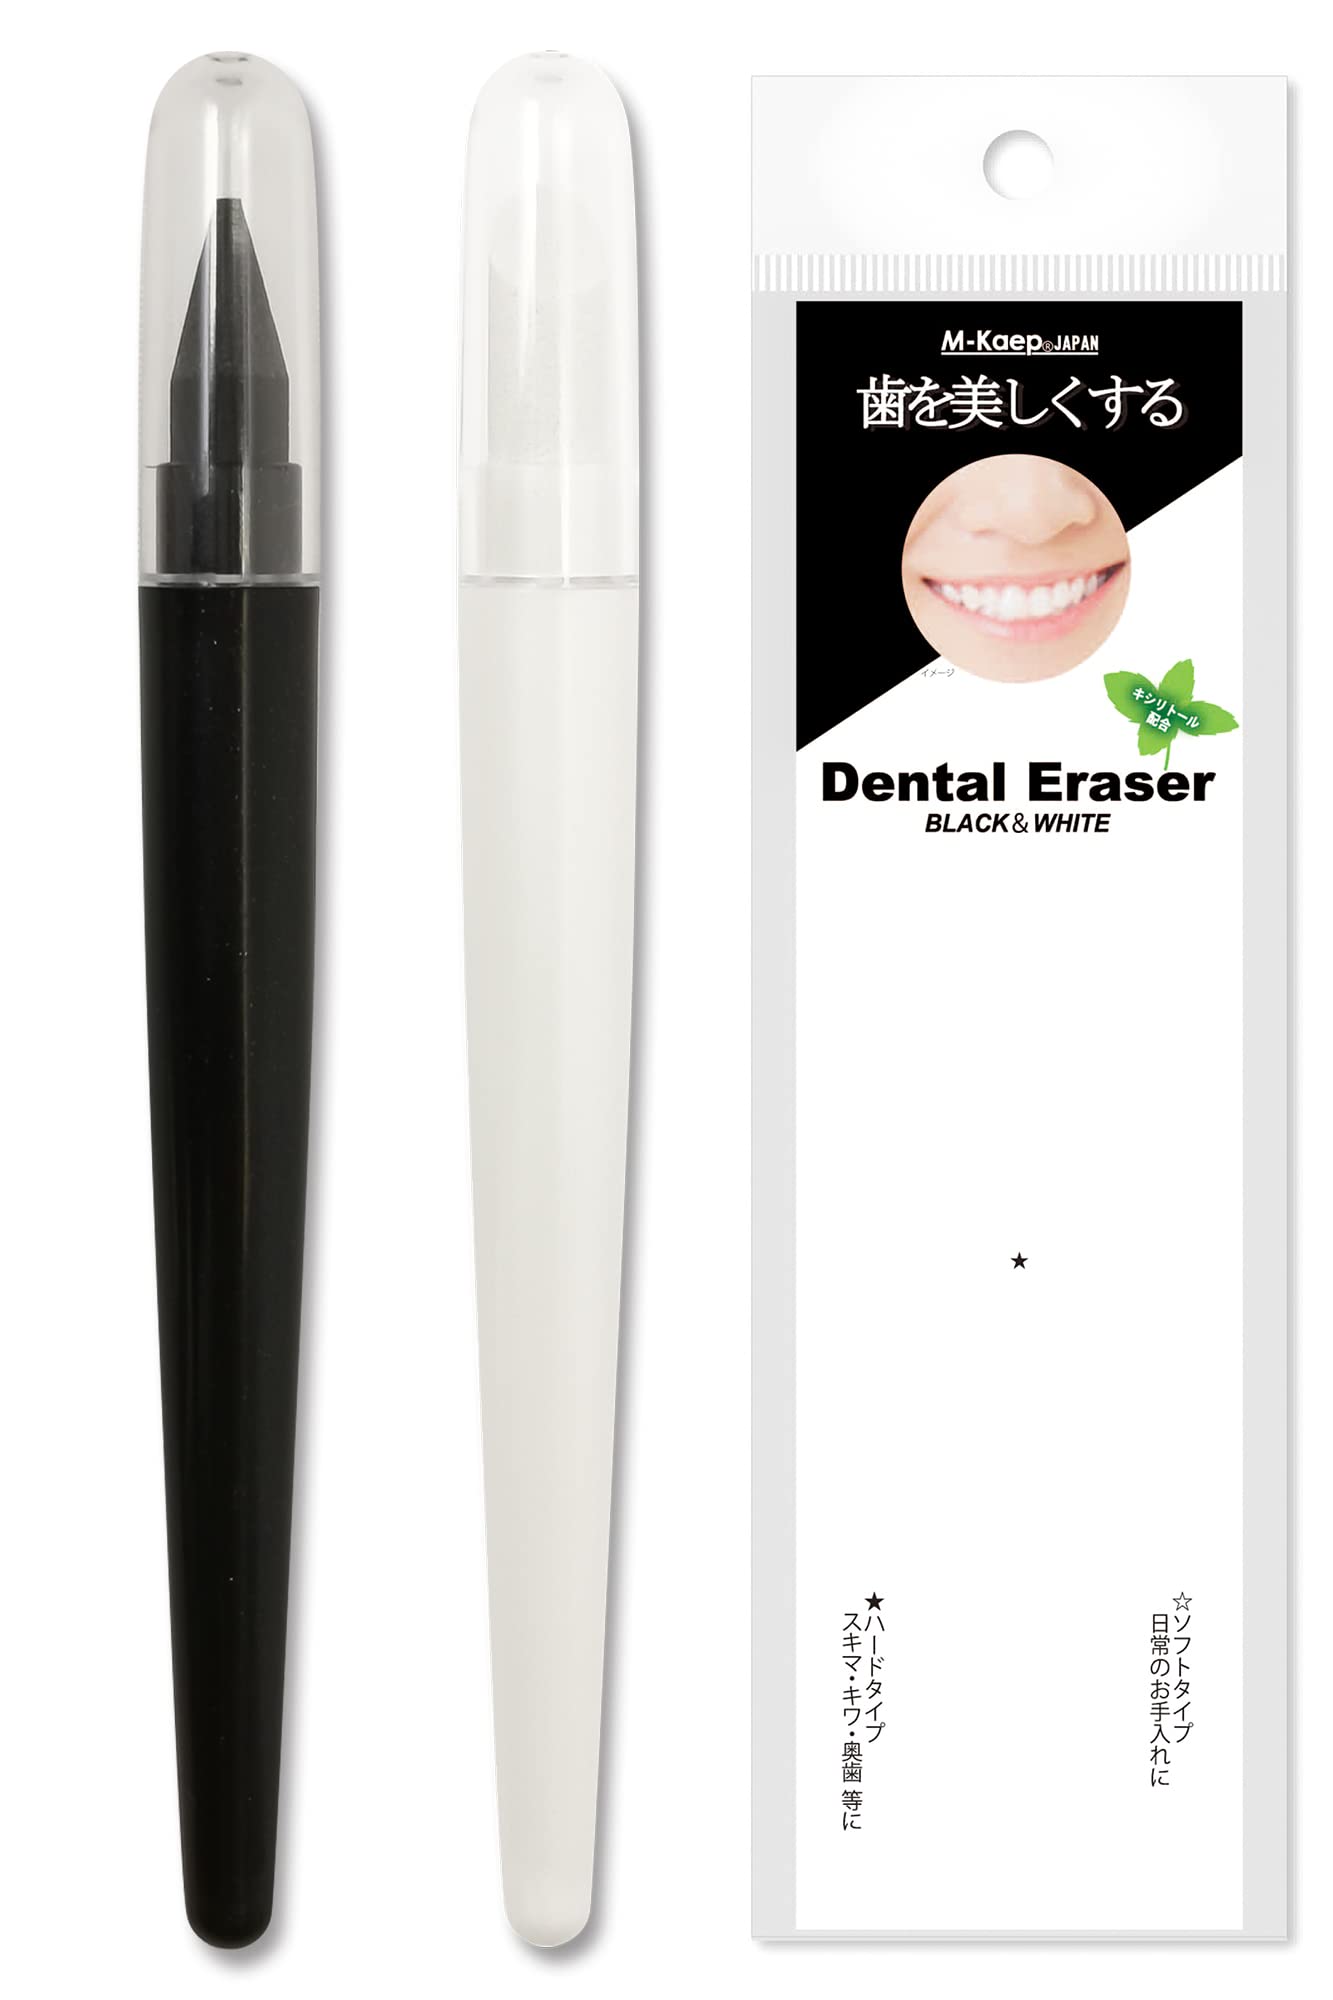 OLUAGE сделано в Японии зуб белый . красивый NEW зубной i Racer окраска дом собственный отбеливание авторучка окраска сбрасывание ластик 2 шт. входит ( черный 